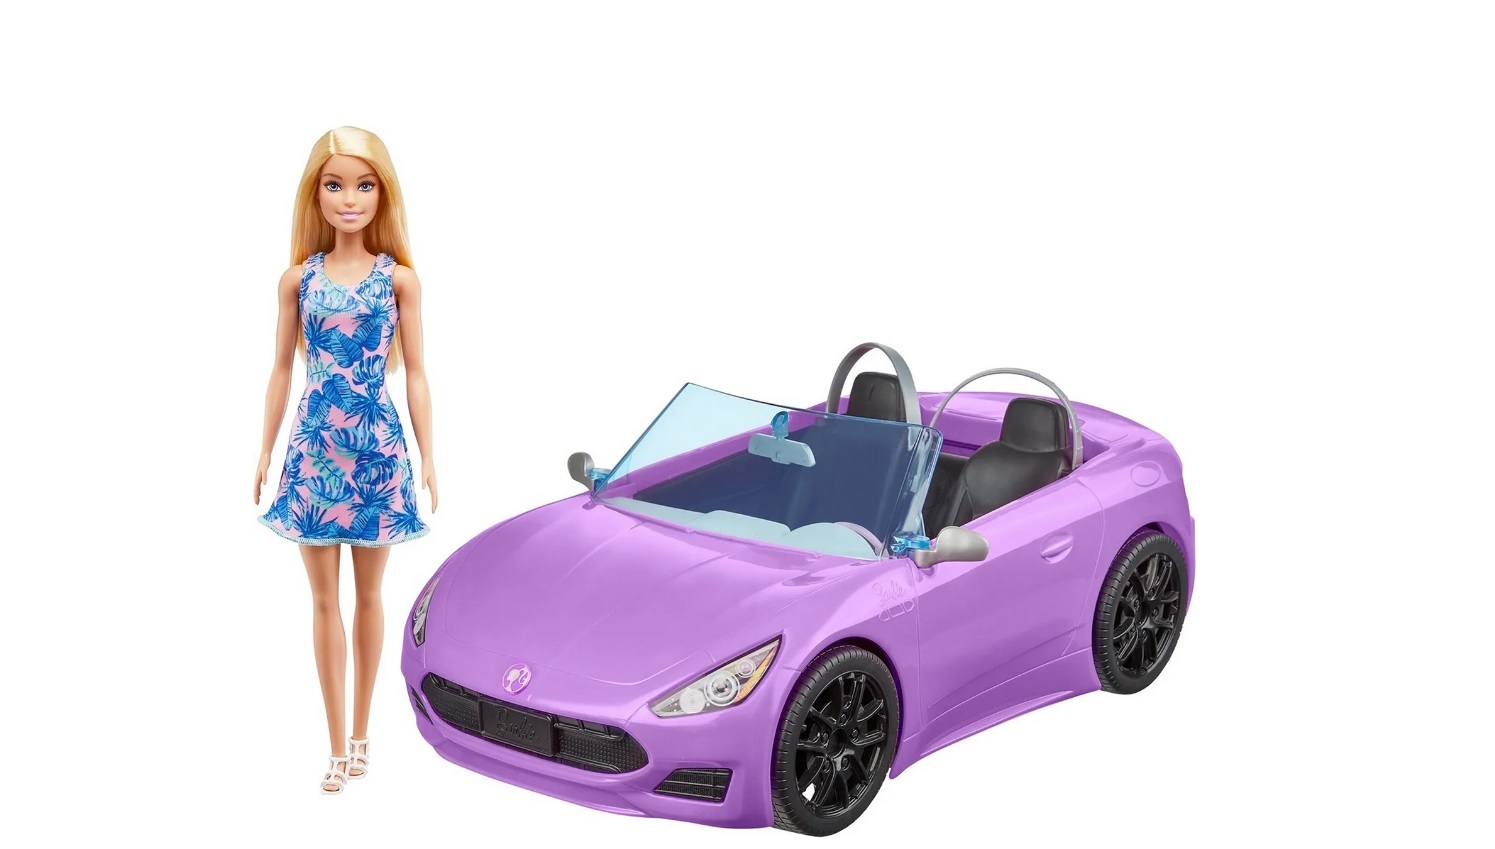 Кукла Barbie HBY29 и розовый кабриолет